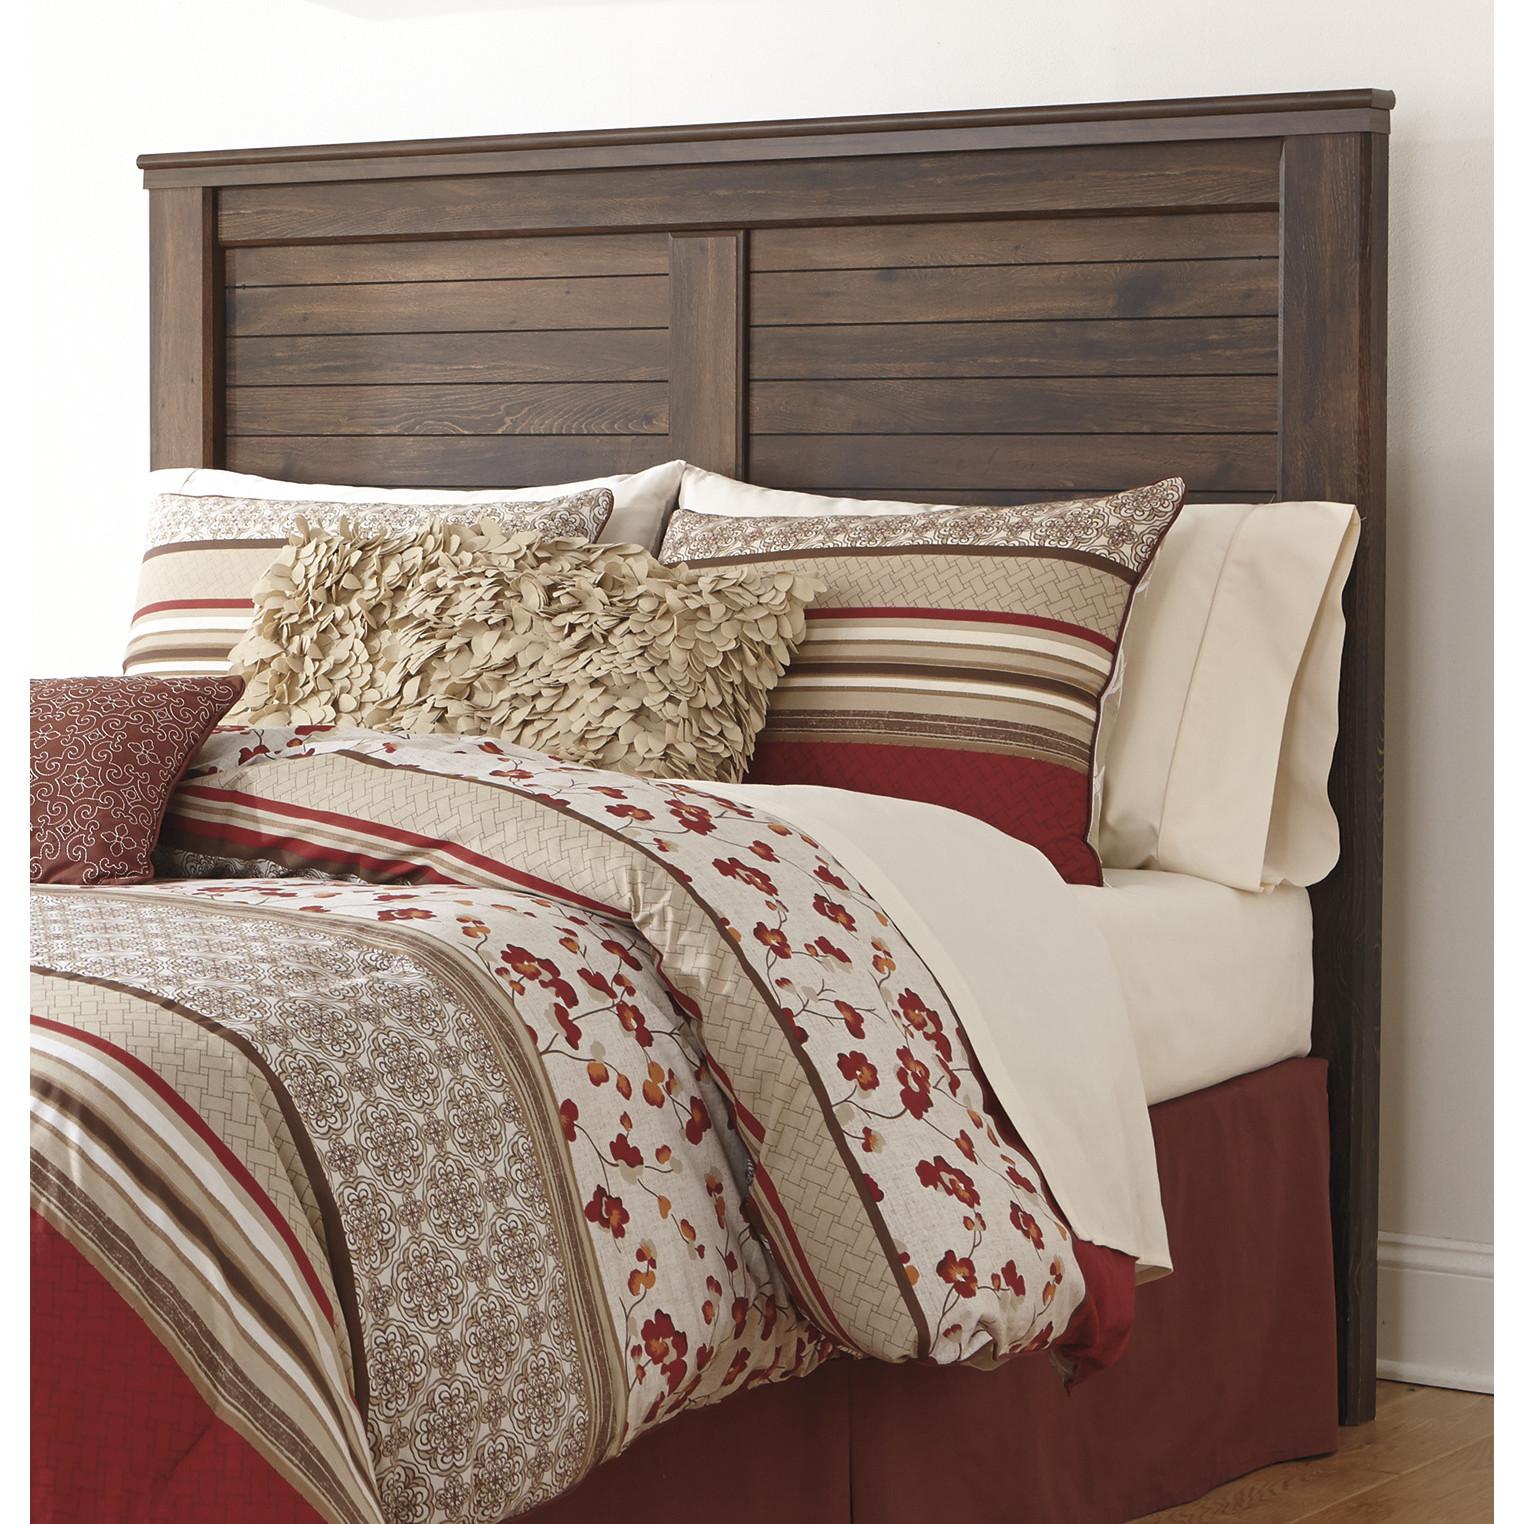 

    
Ashley Furniture Quinden Panel Bedroom Set Brown B246-58-56-99-92(2)
